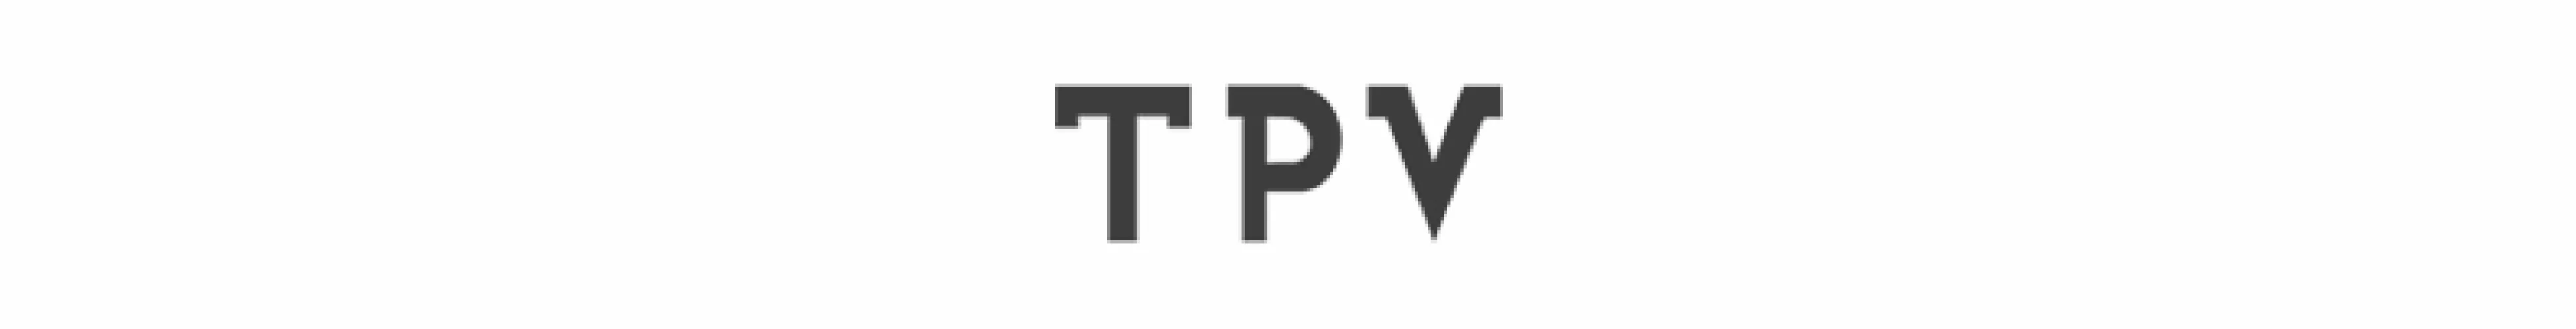 TPV_logo